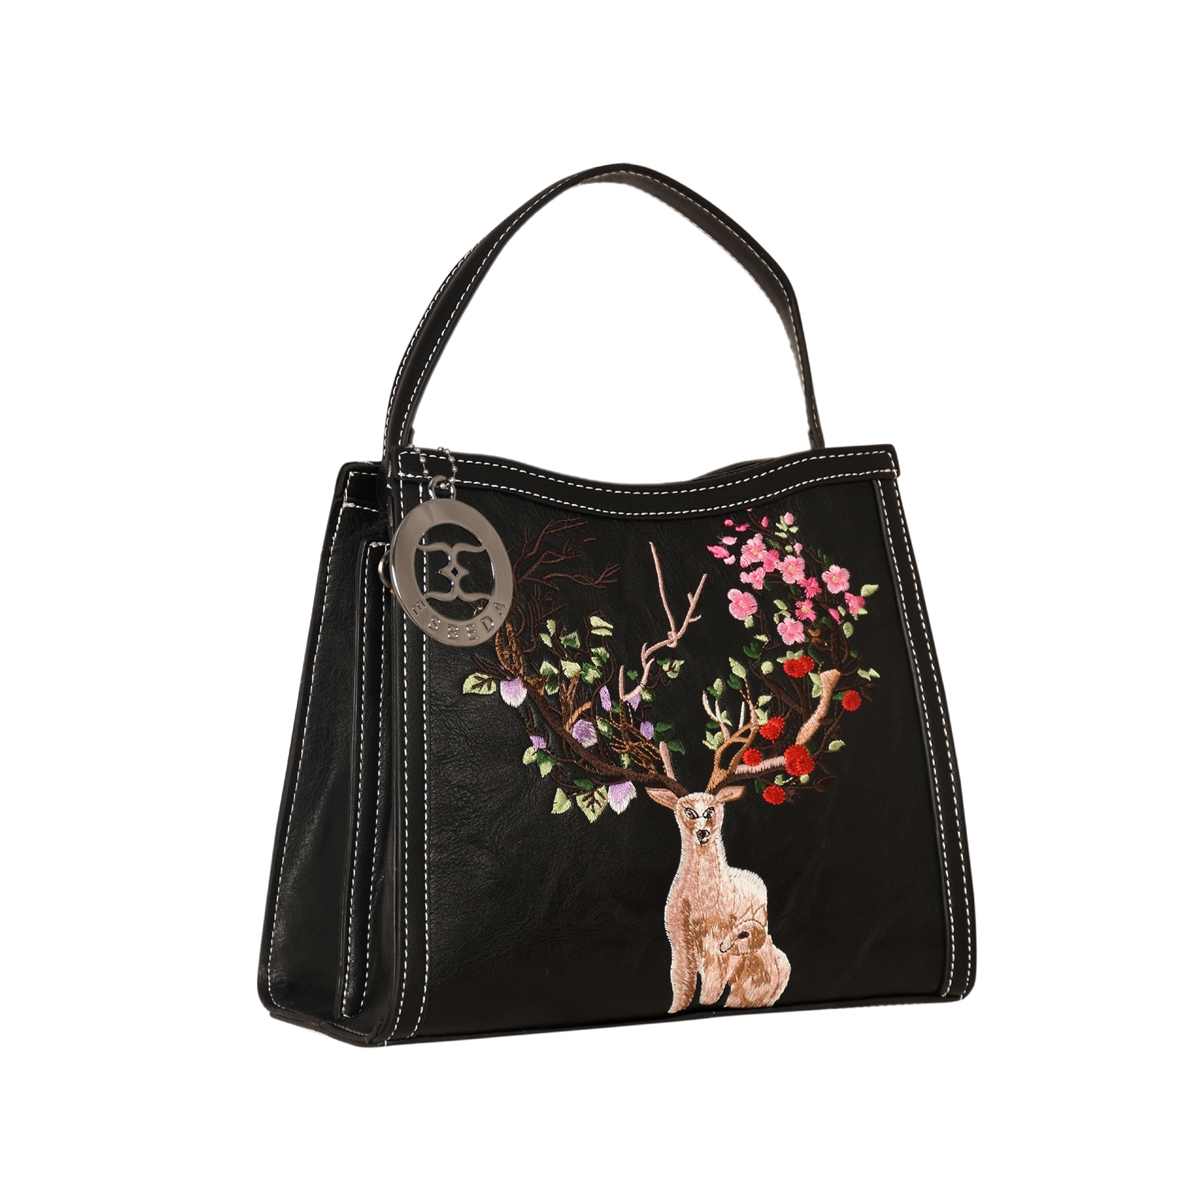 ESBEDA | ESBEDA Black Color Embroidery Dear Handbag For Womens 7